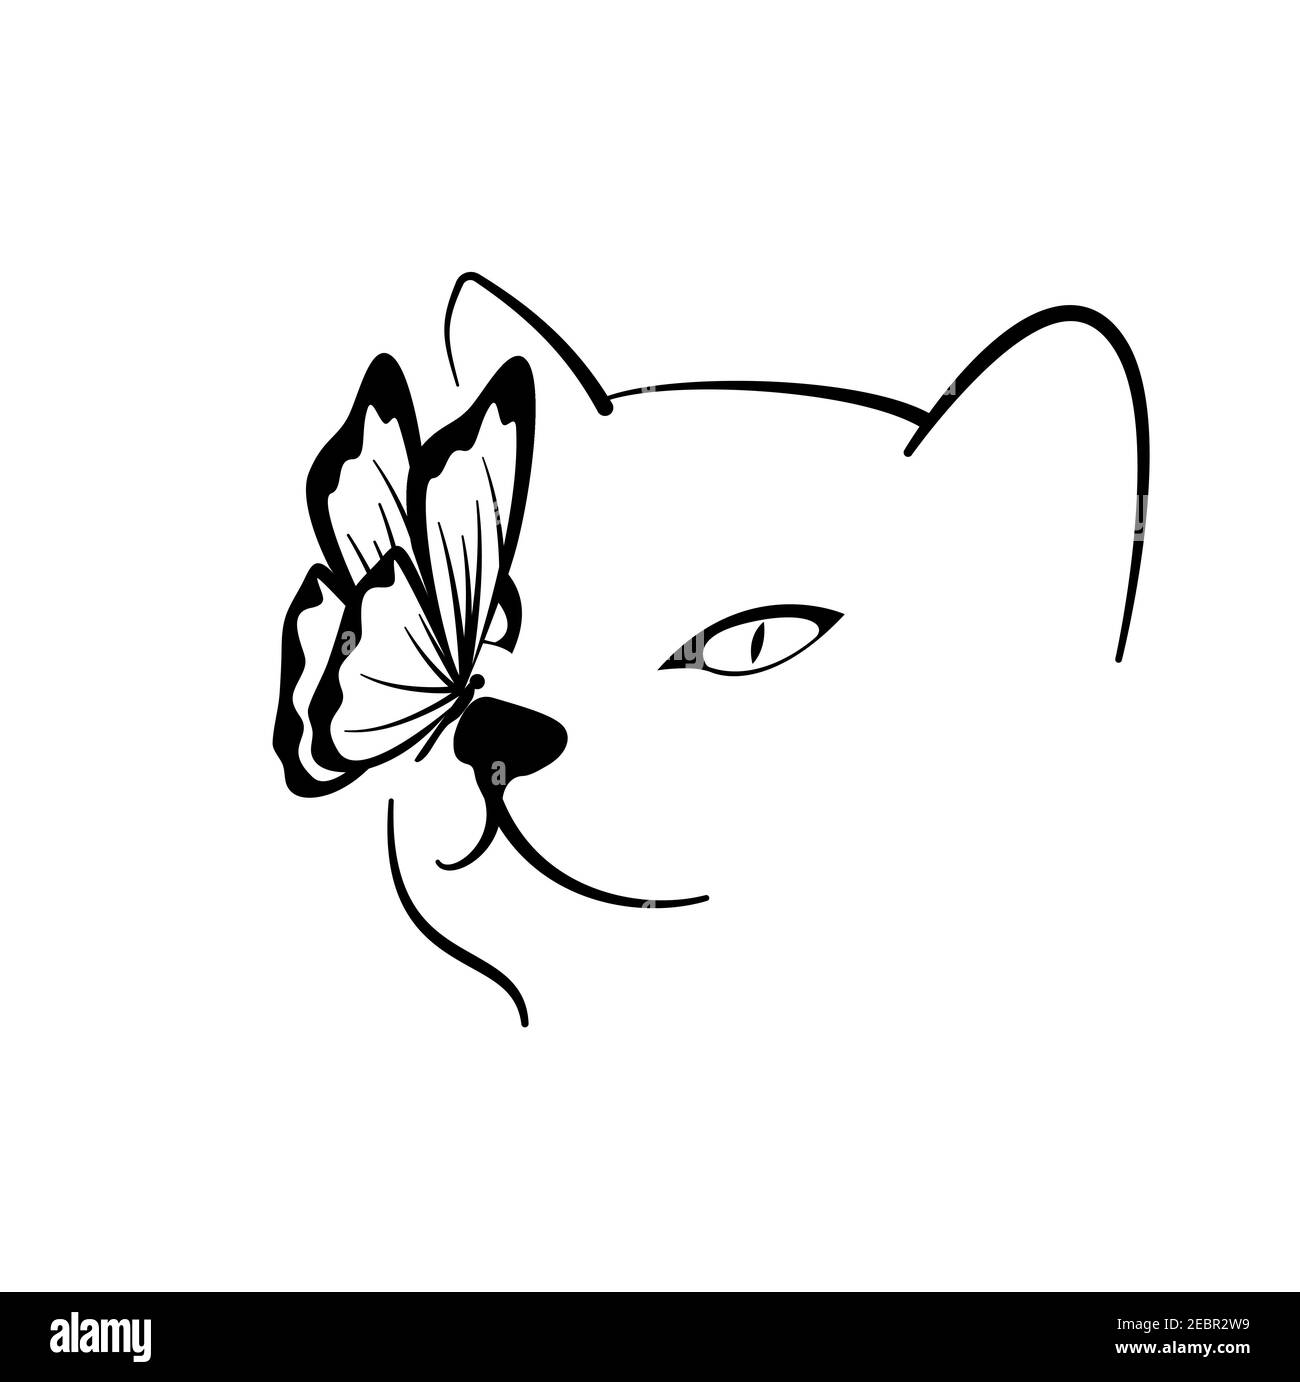 Dessin au trait vectoriel de chat ferme sur fond blanc. Portrait de chat avec un papillon sur son nez. Vecteur pour les logotypes, les métiers, les impressions. Illustration de Vecteur